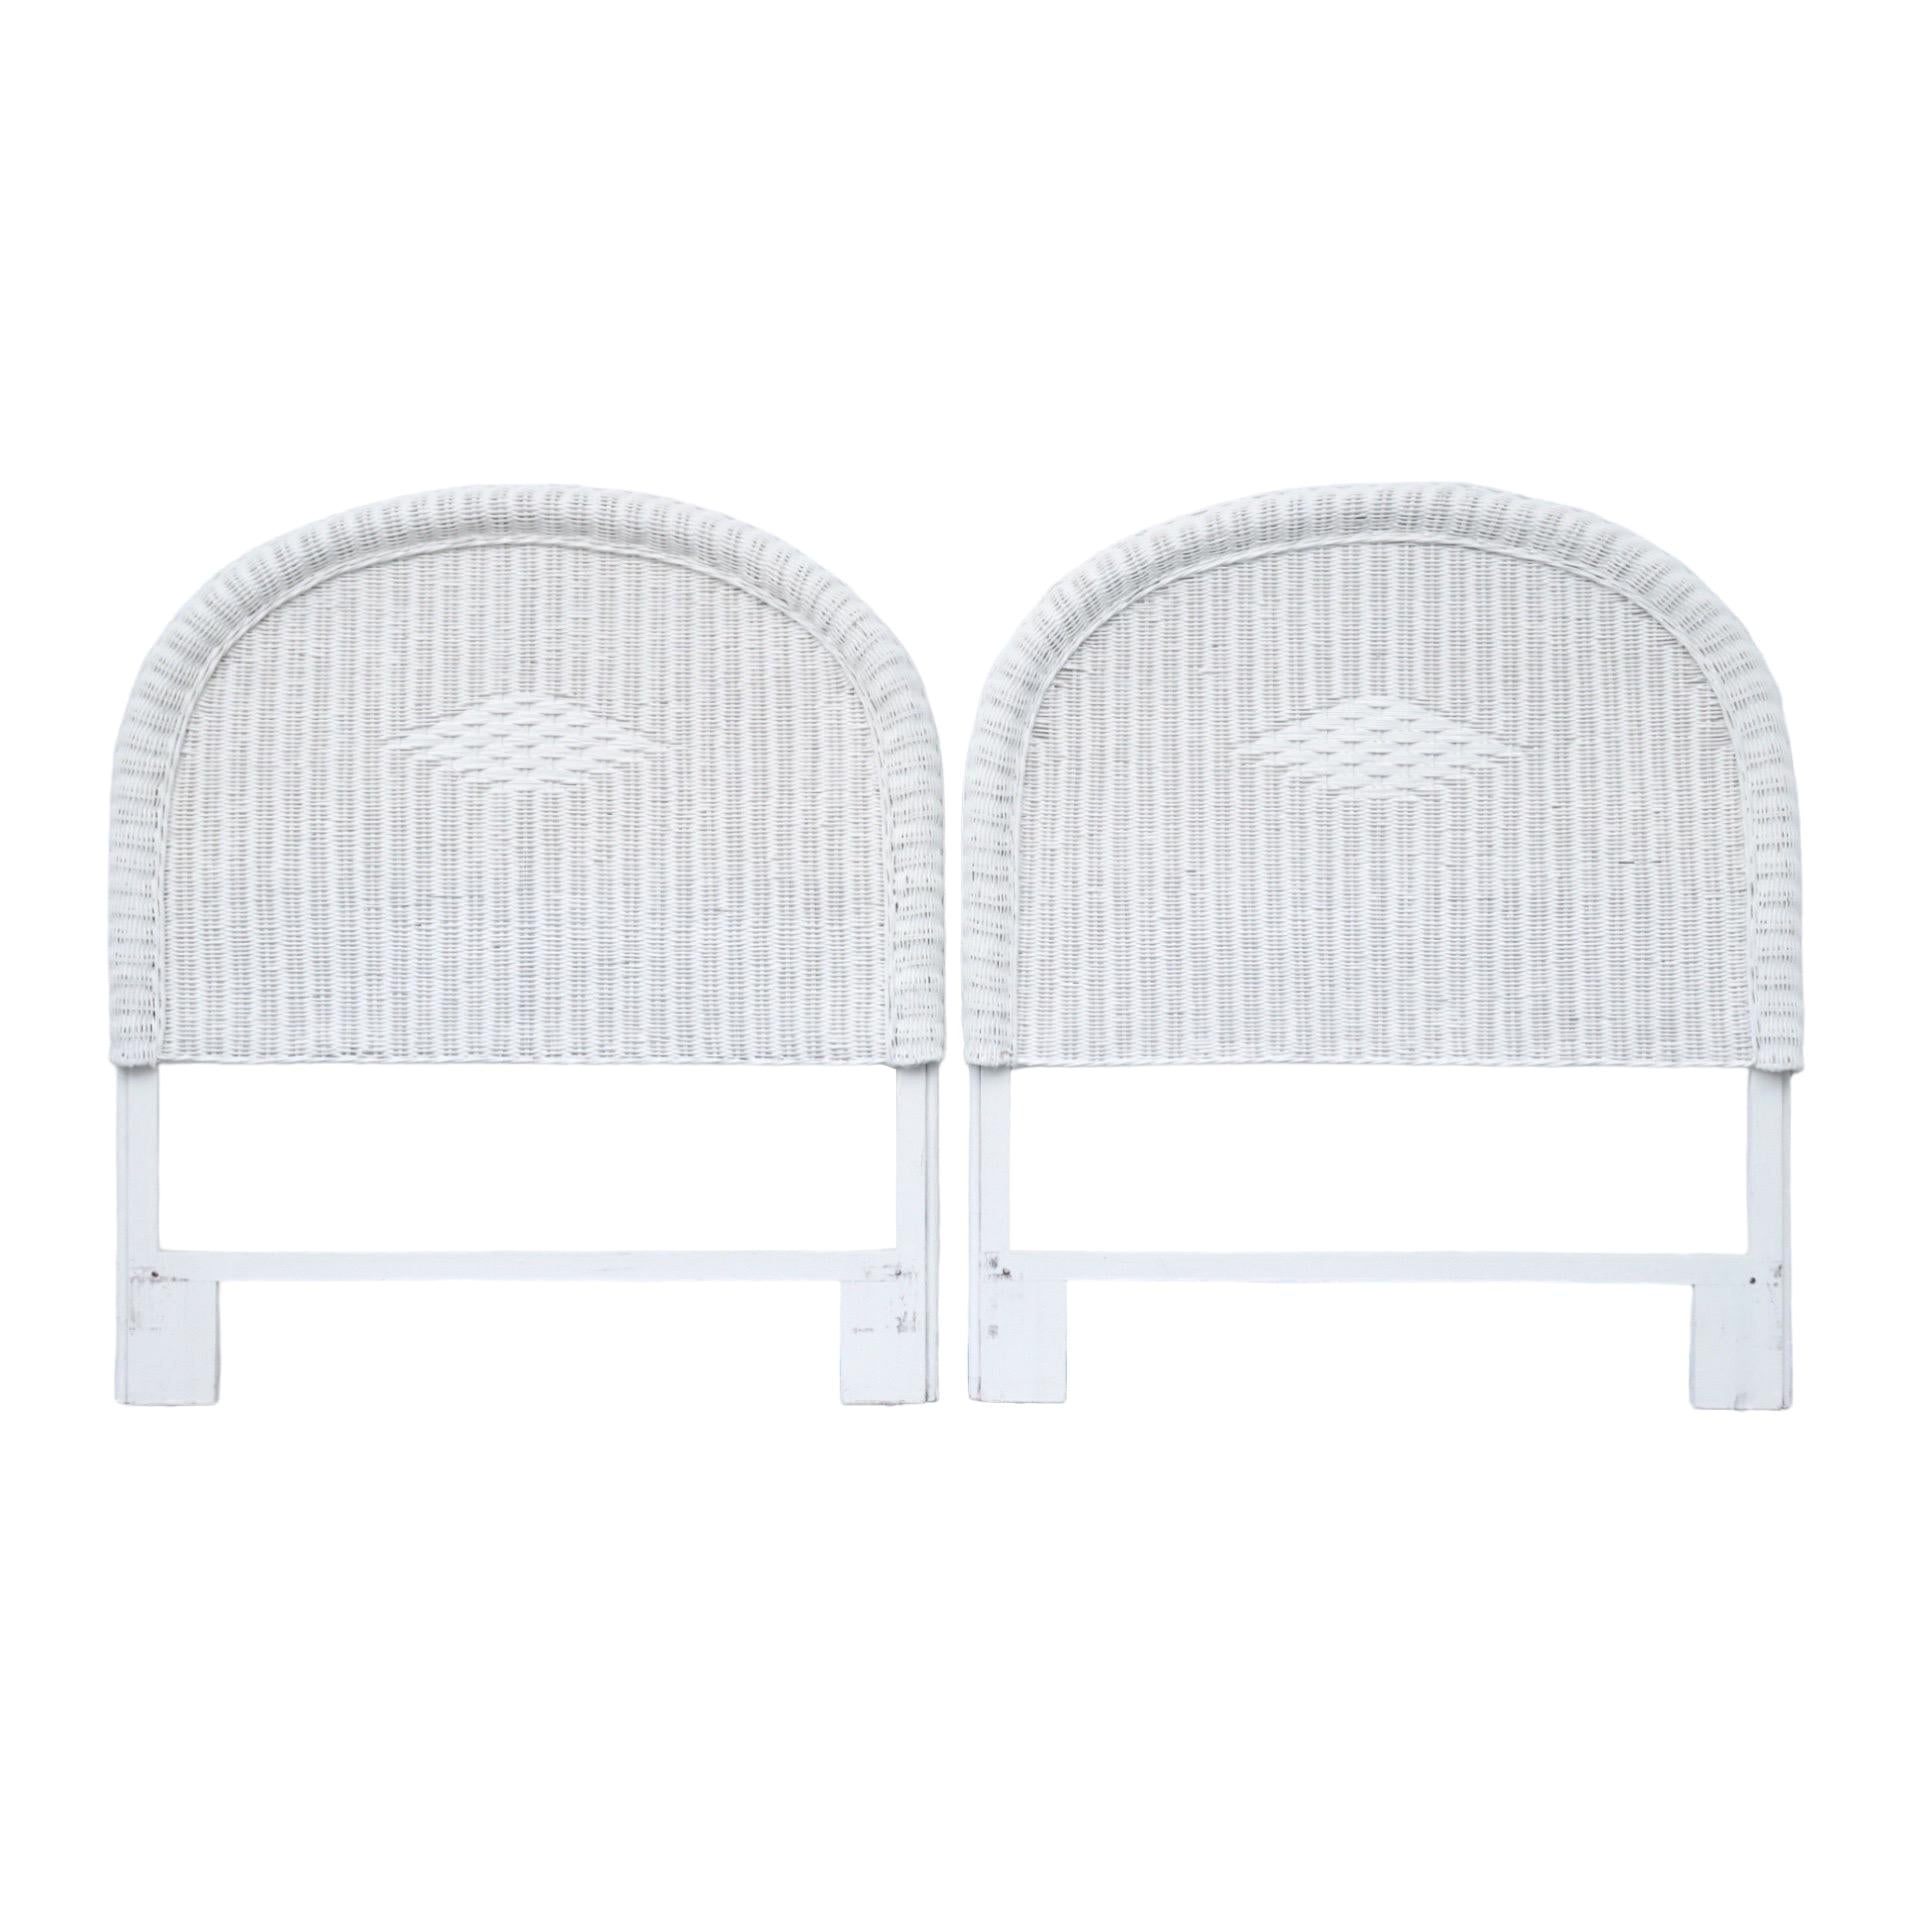 Twin Headboards aus weißem Rattan – ein Paar